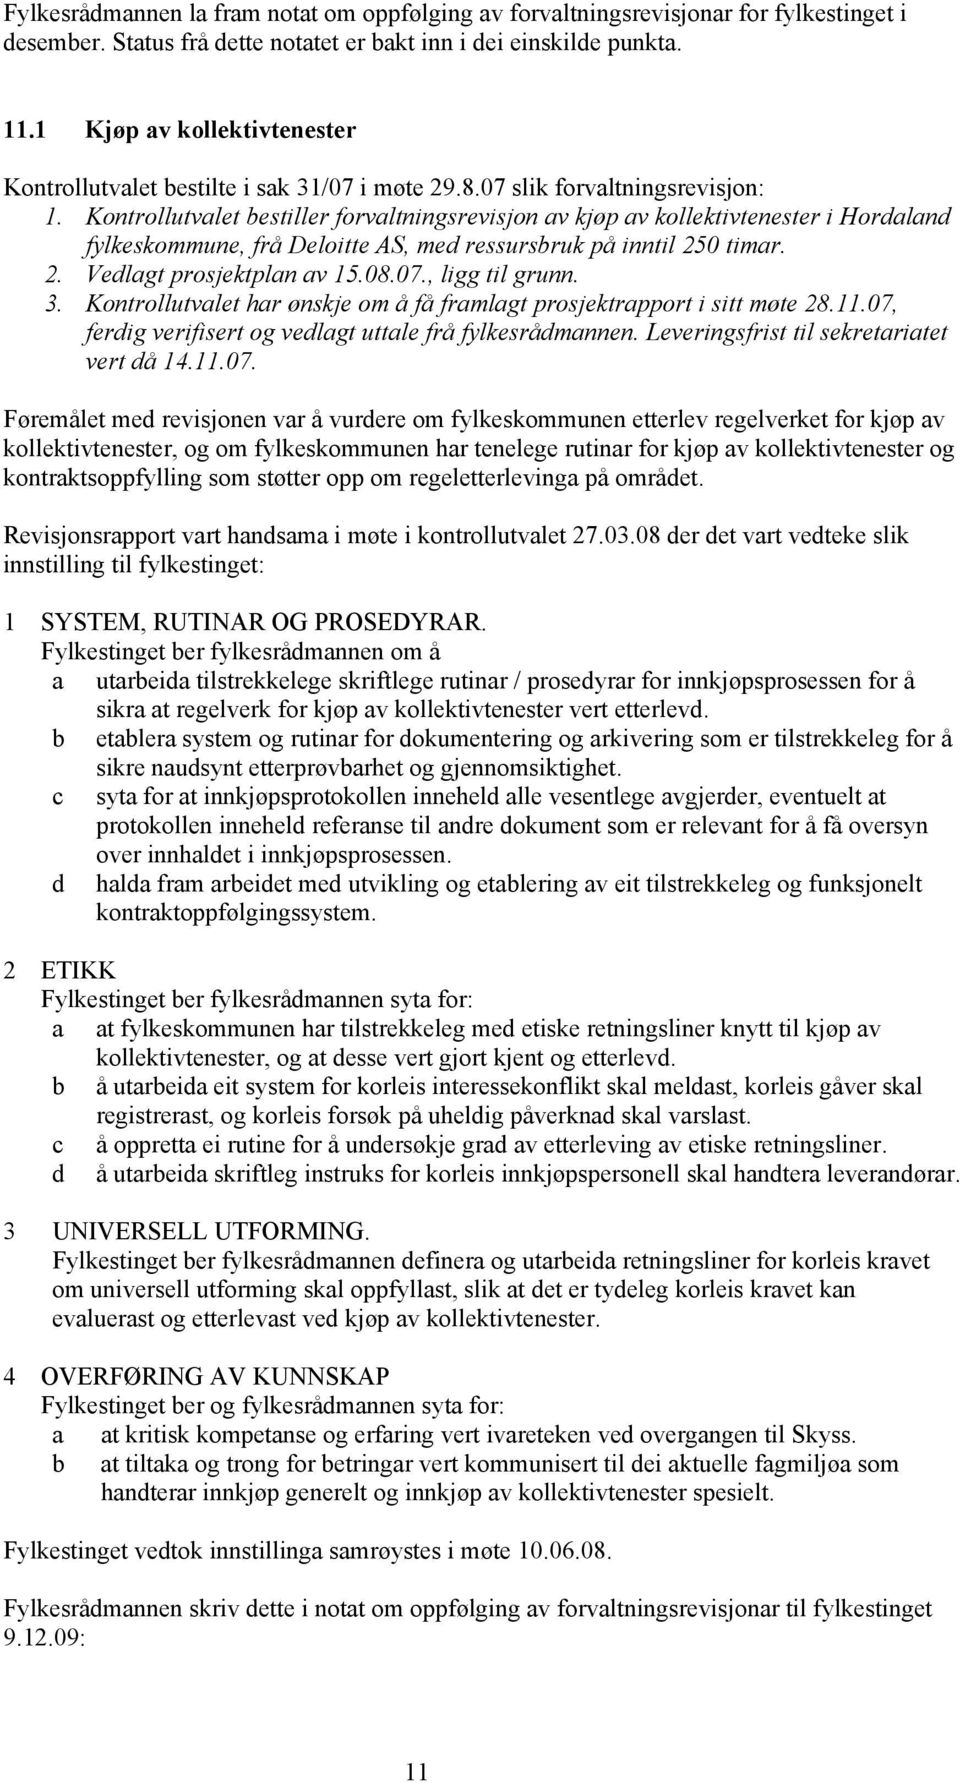 Kontrollutvalet bestiller forvaltningsrevisjon av kjøp av kollektivtenester i Hordaland fylkeskommune, frå Deloitte AS, med ressursbruk på inntil 250 timar. 2. Vedlagt prosjektplan av 15.08.07.